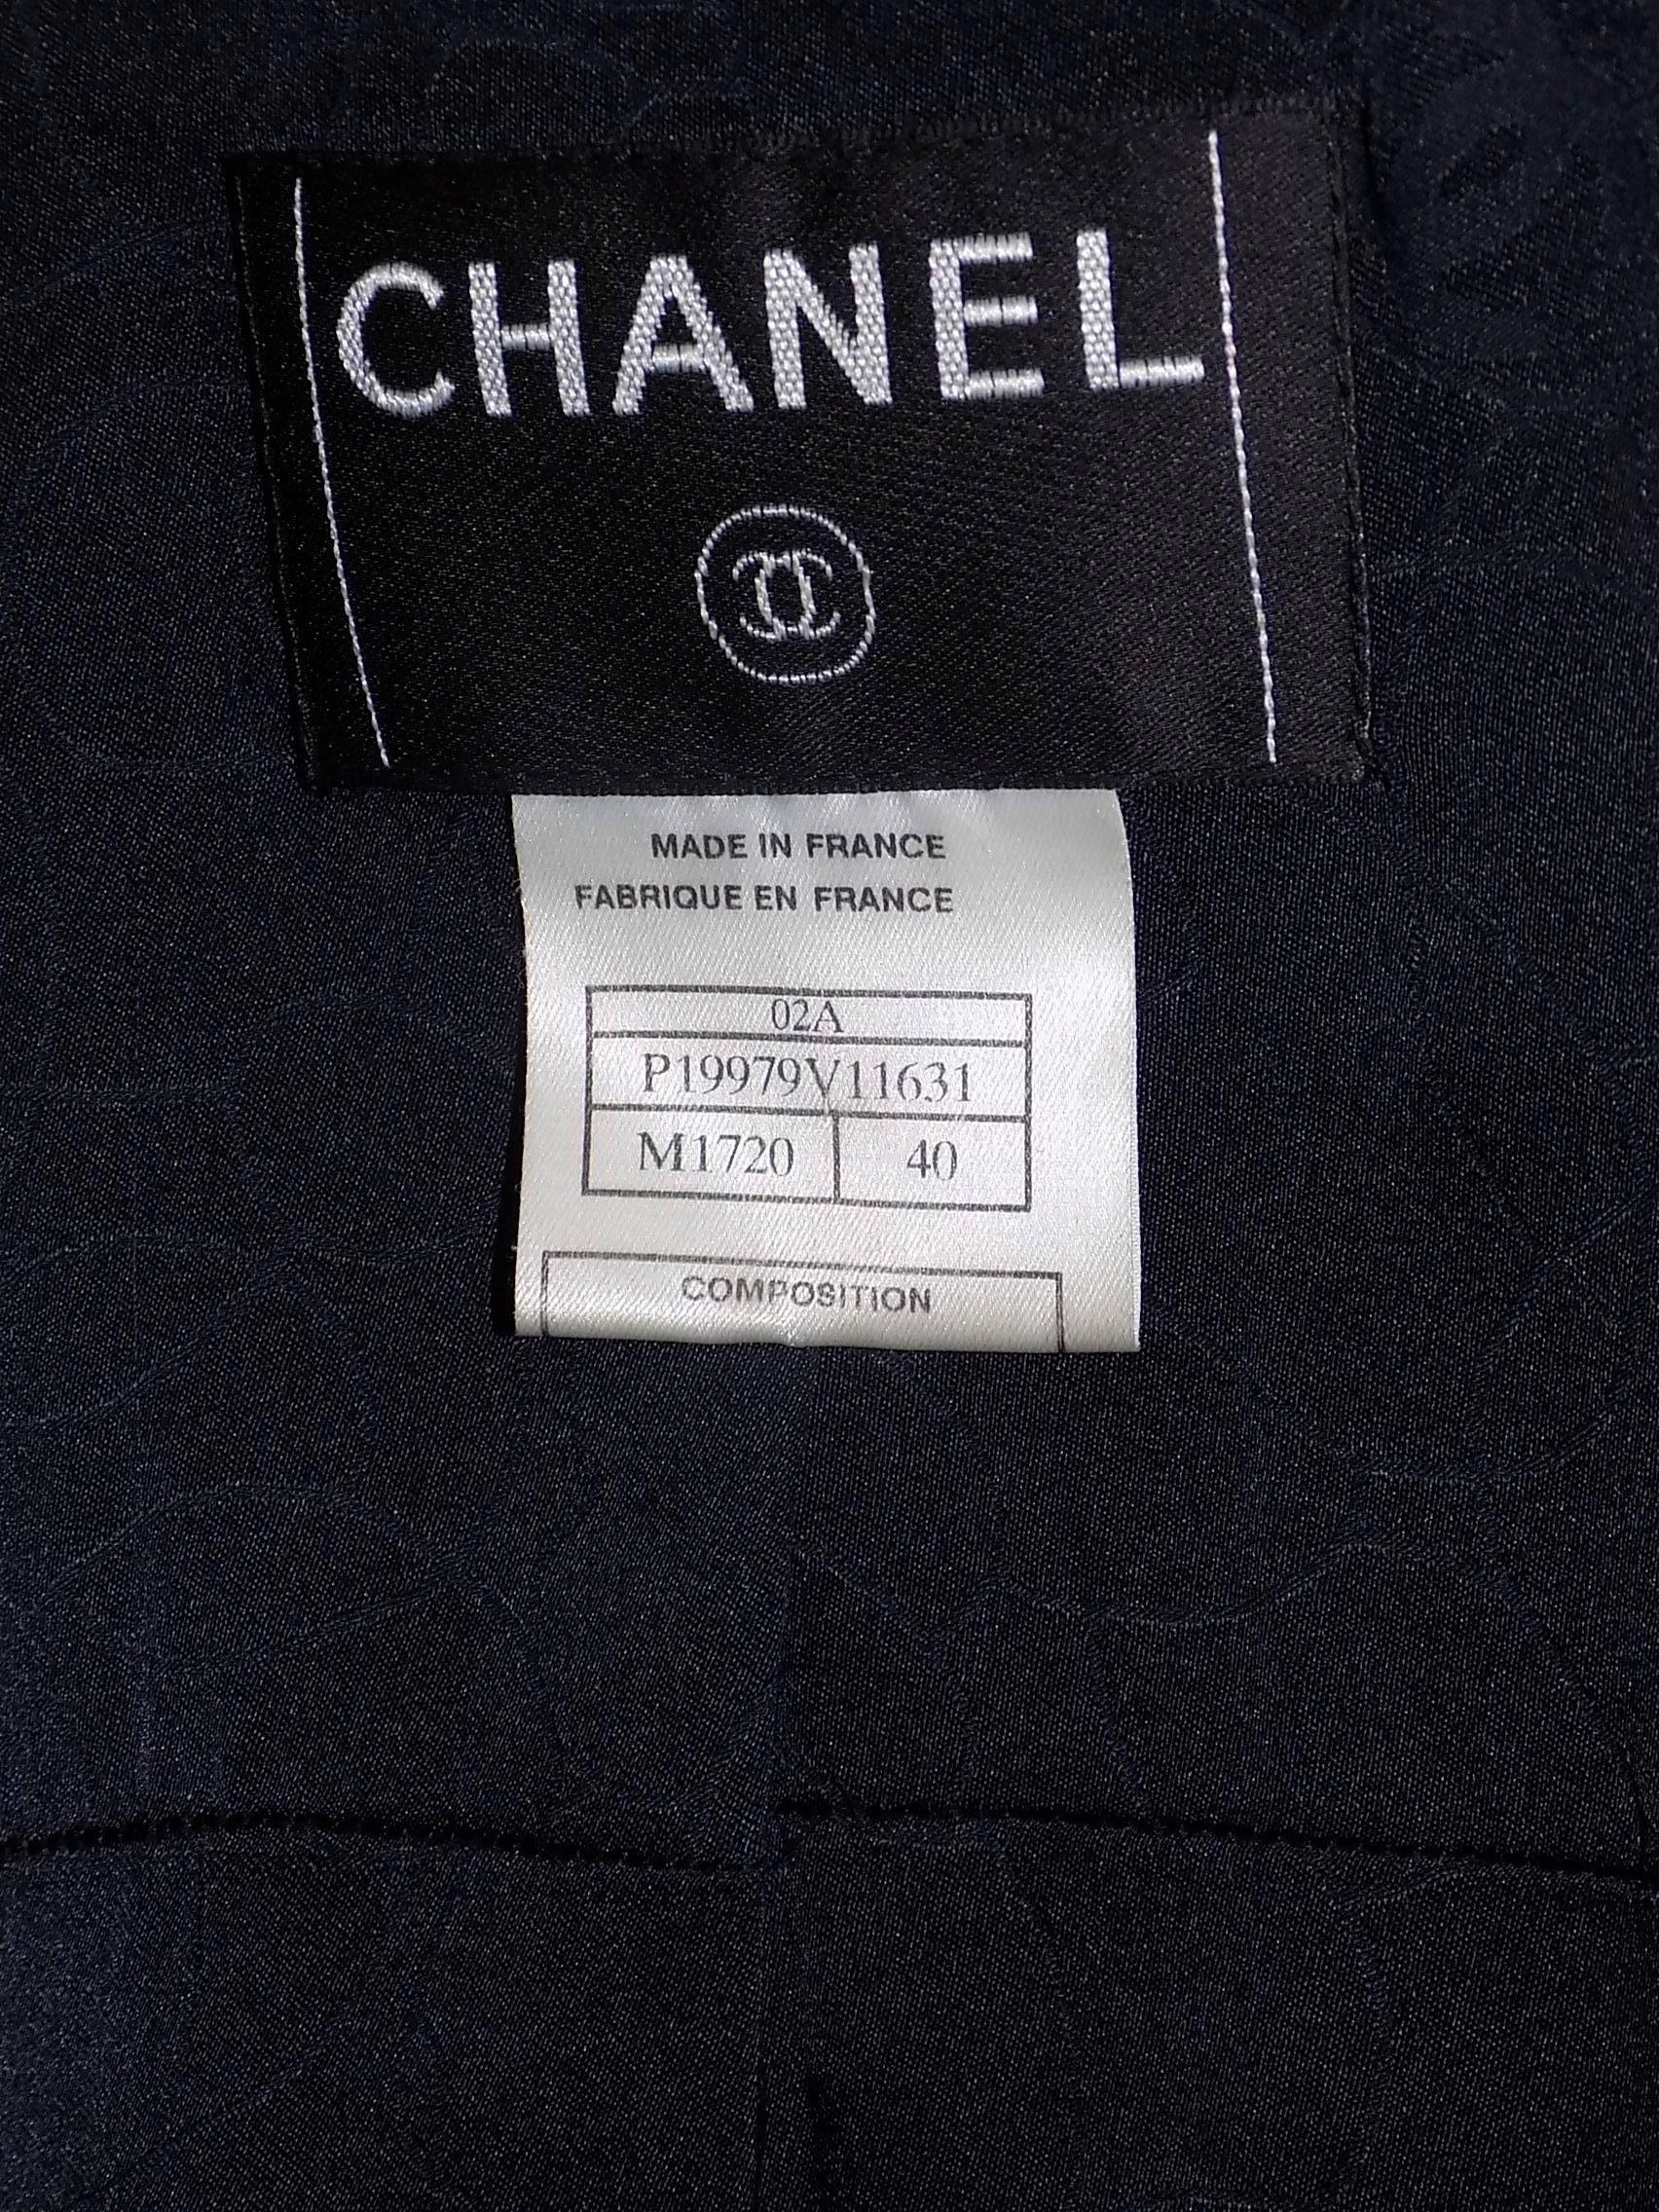 Short Chanel Boucle Jacket / coat 2